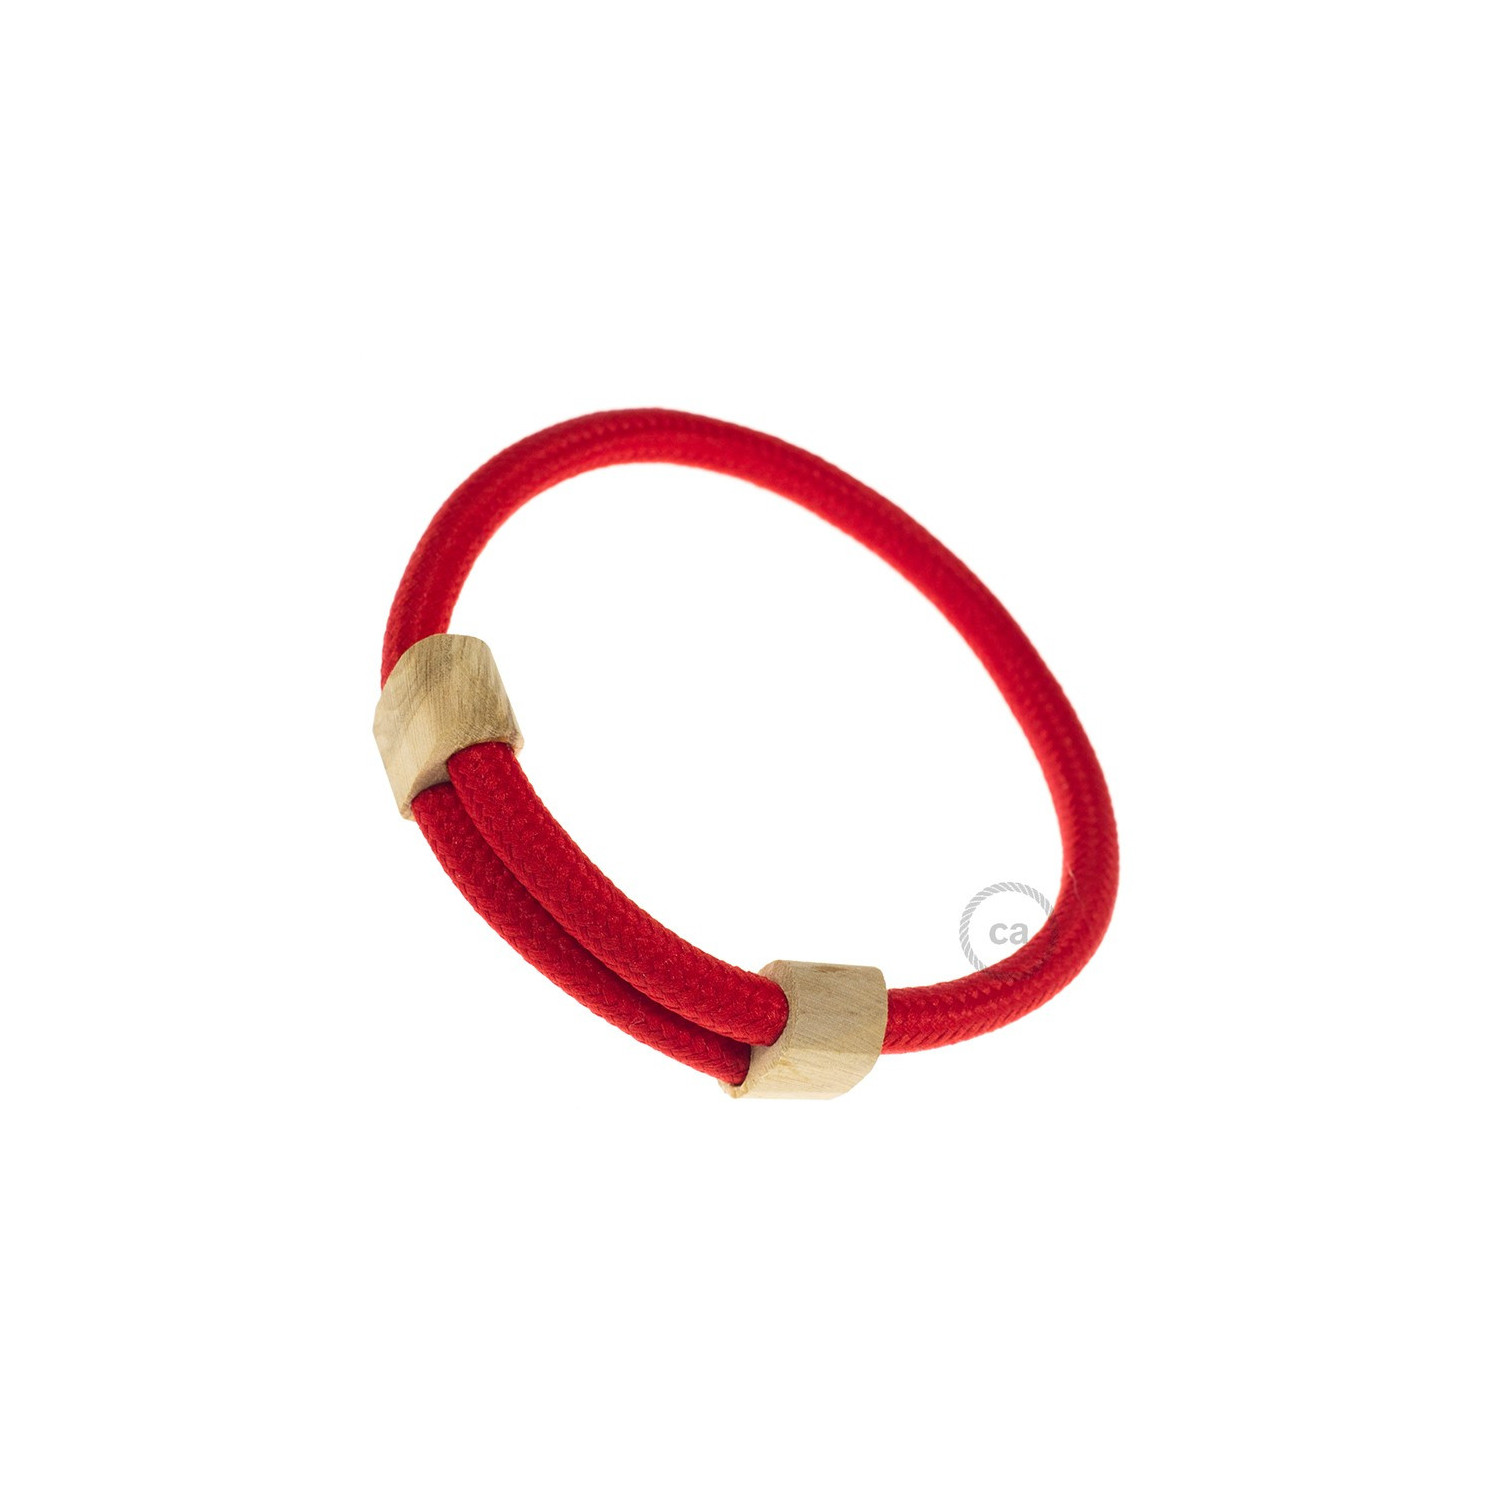 Creative-Bracelet in tessuto Effetto Seta Rosso RM09. Chiusura scorrevole in legno. Made in Italy.